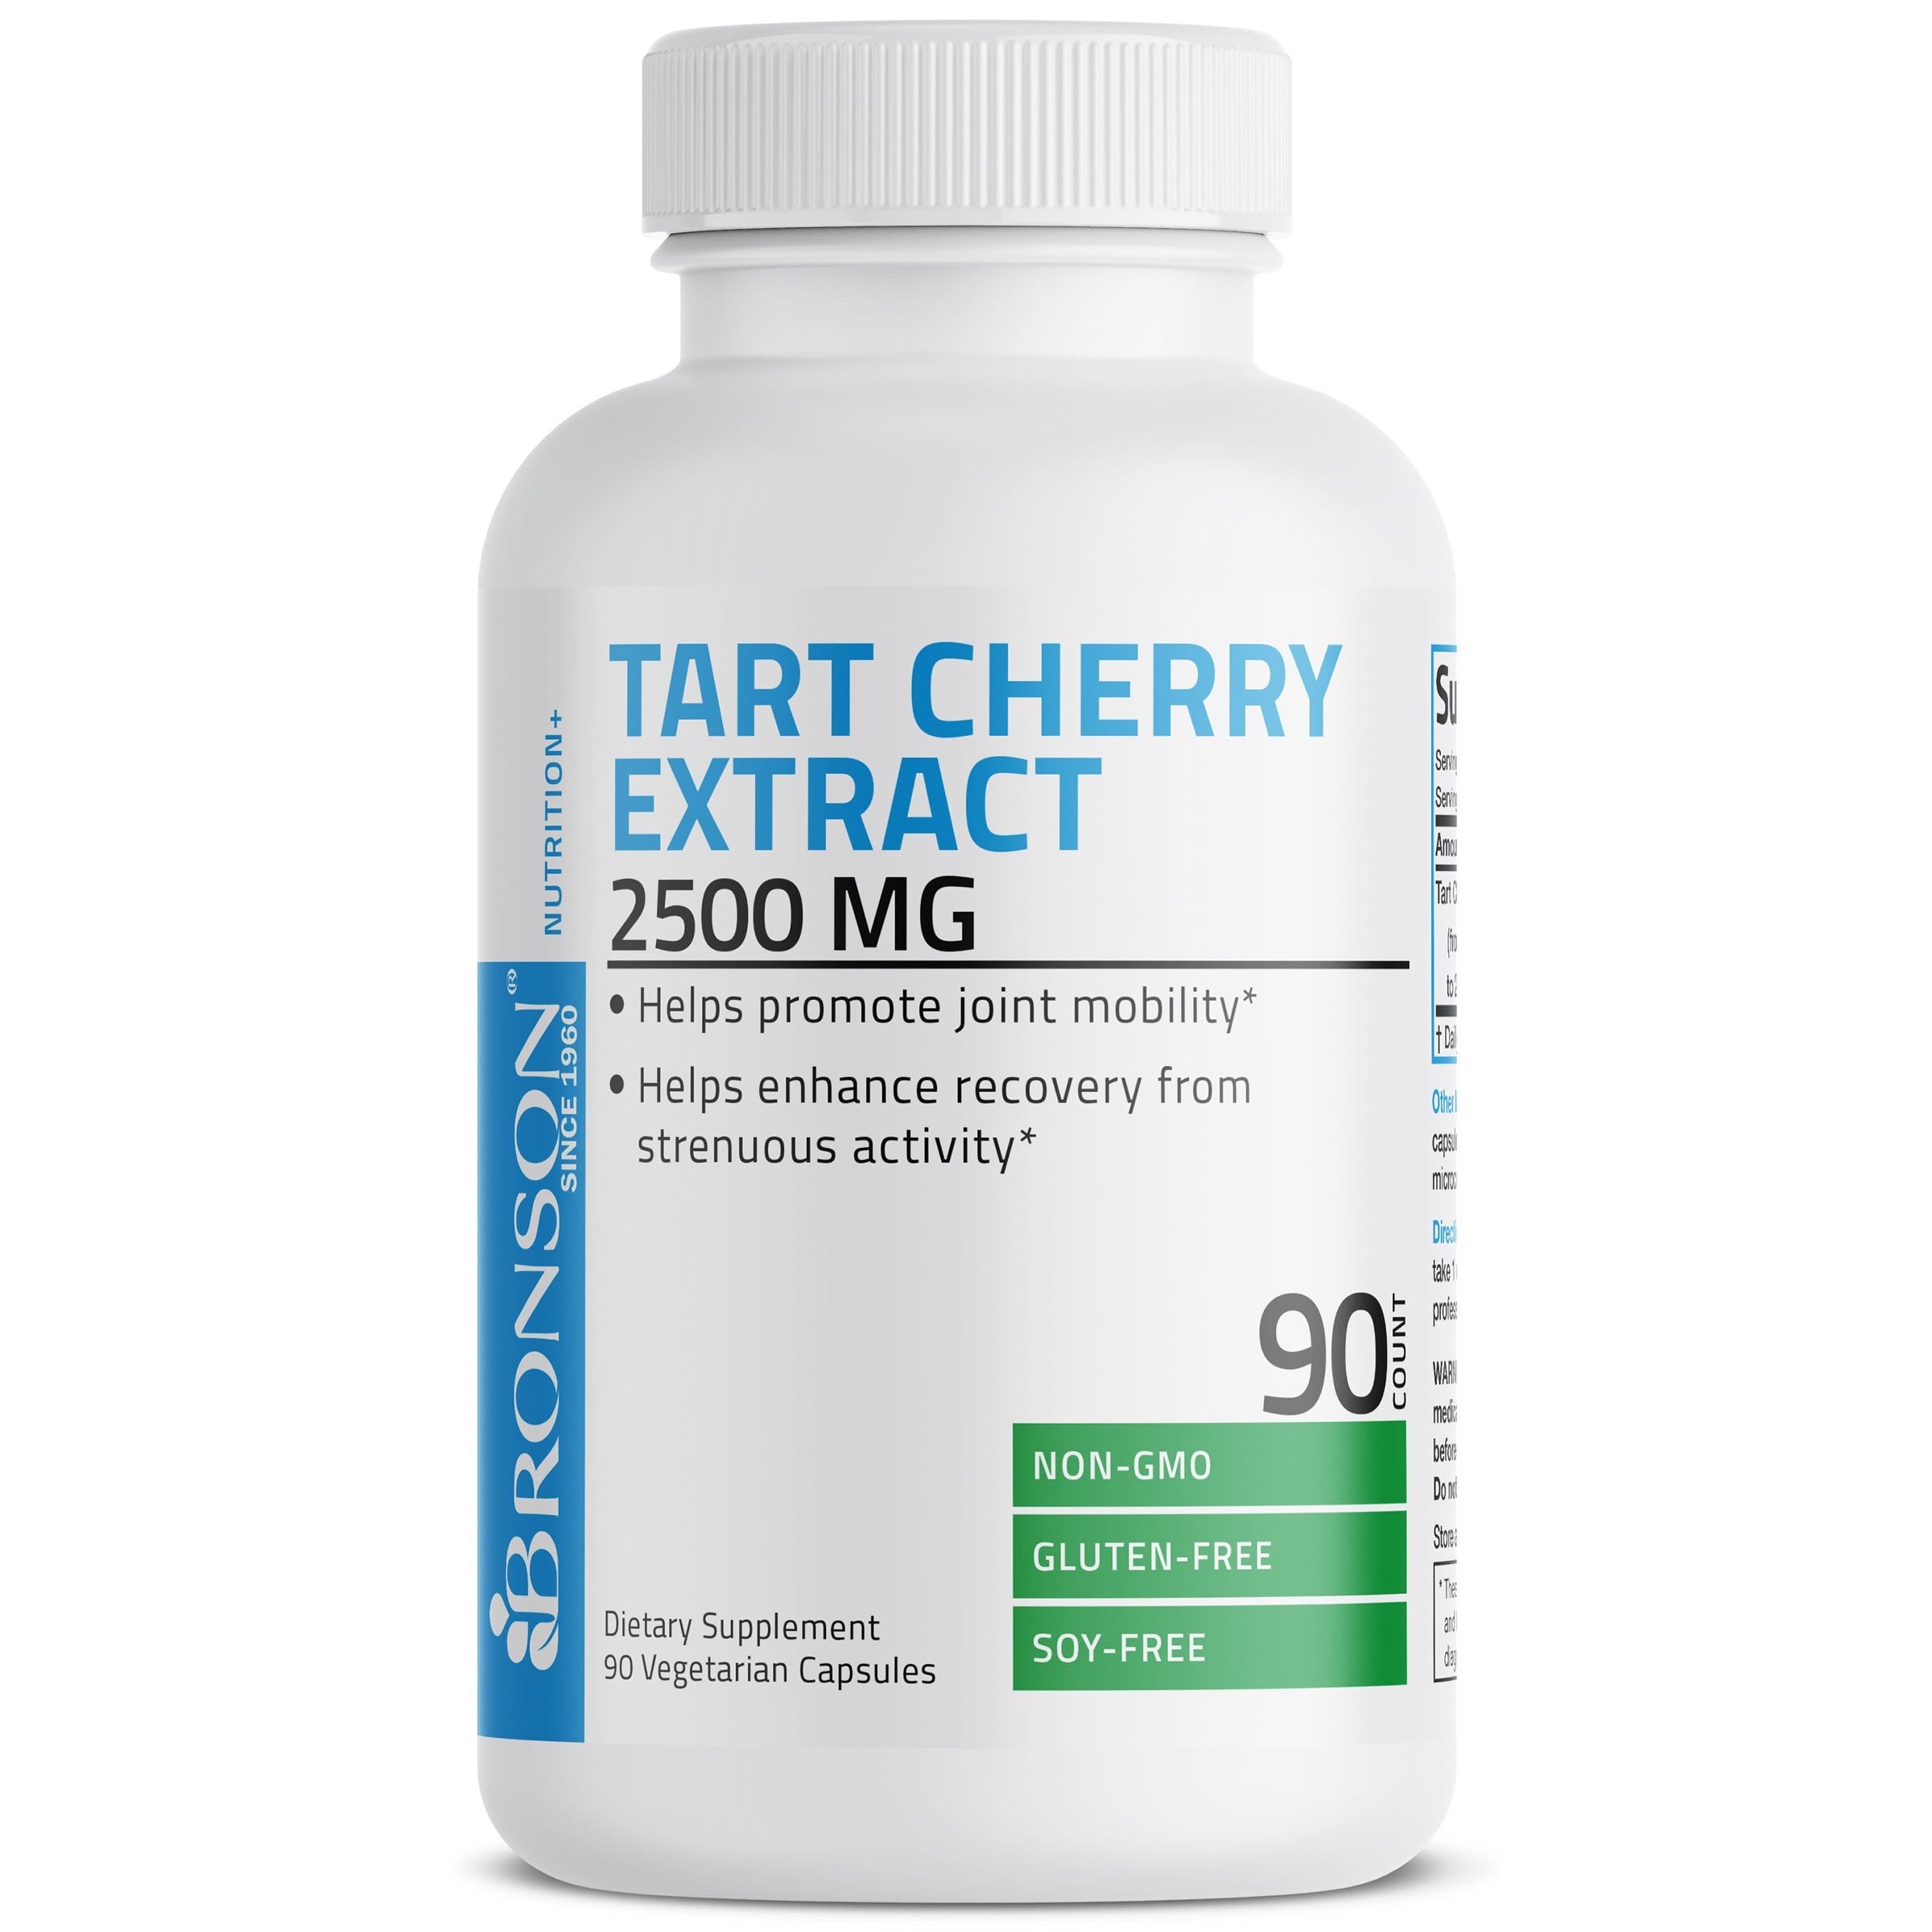 Tart Cherry Extract - 2,500 mg view 4 of 6